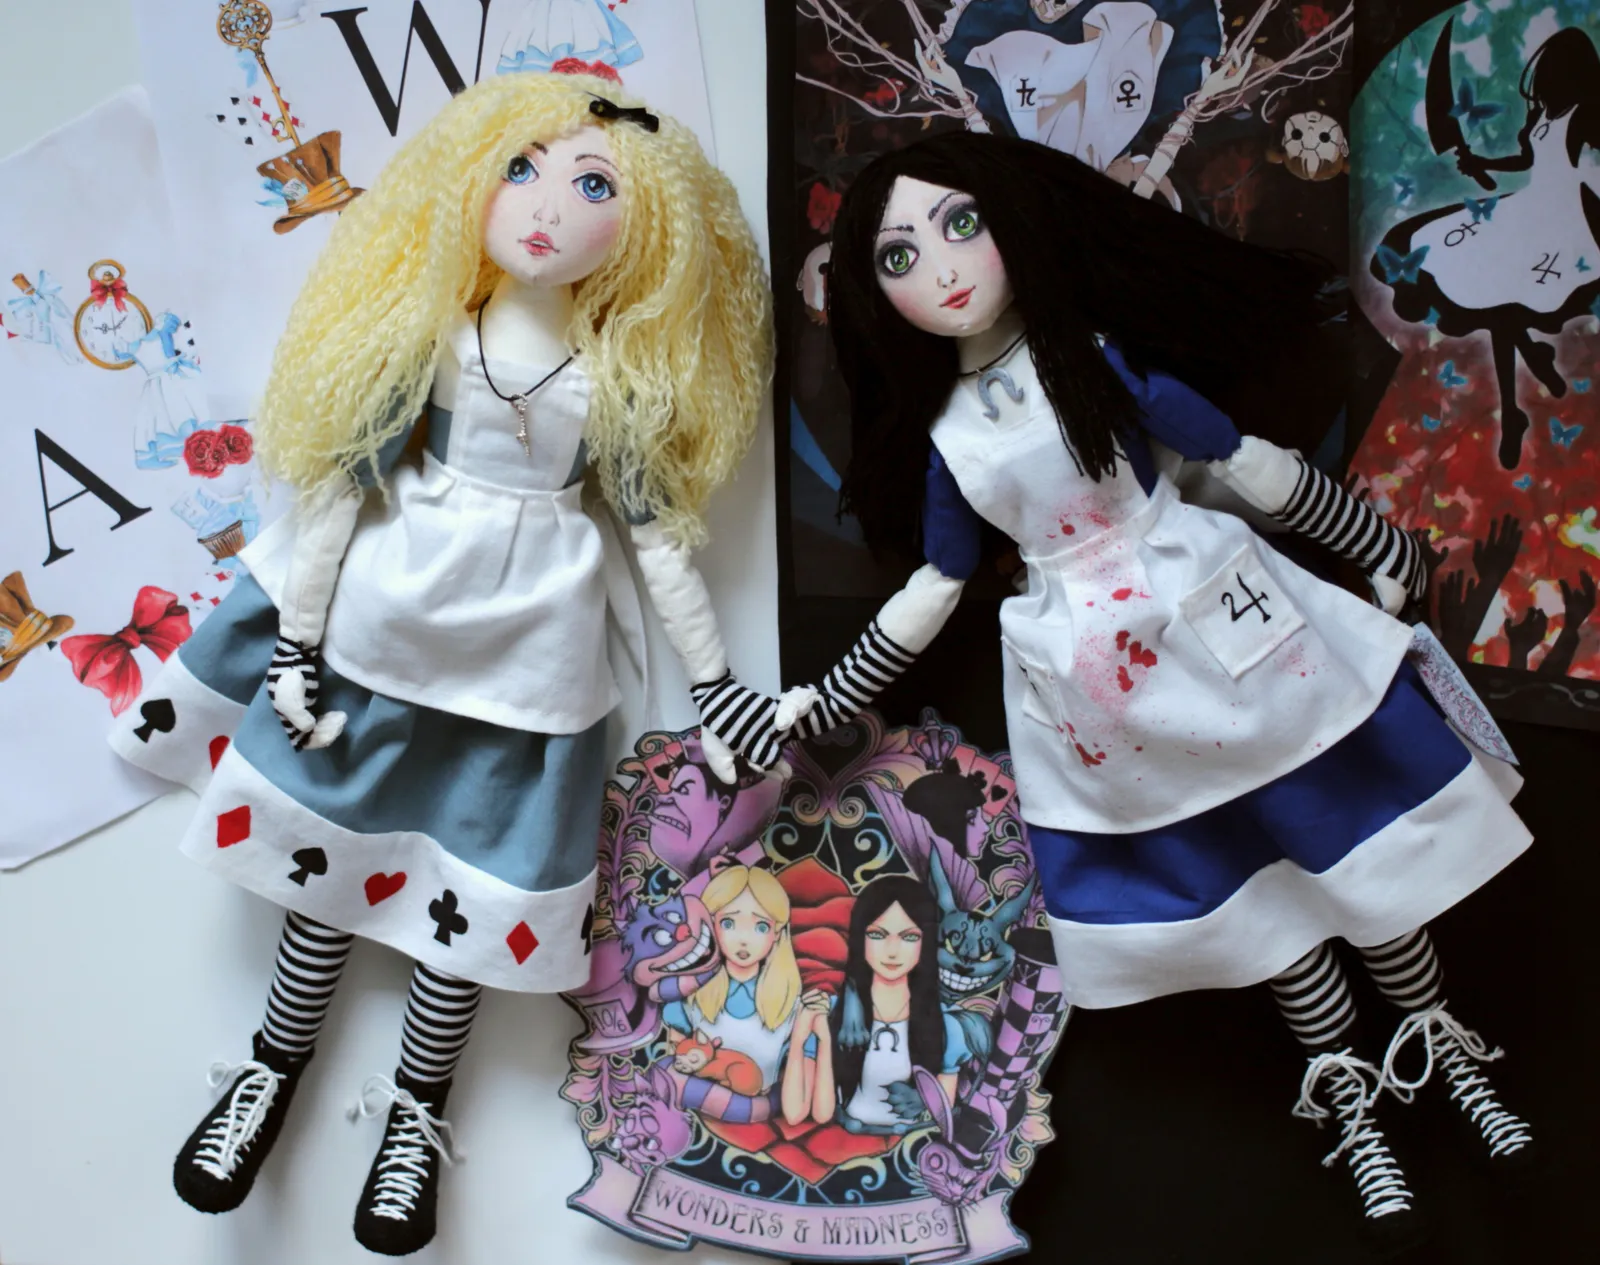 Другие варианты алиса. Кукла Алиса. Алиса ы стране чудес кукольная. Я И моя кукла. Алиса кукла Меган.